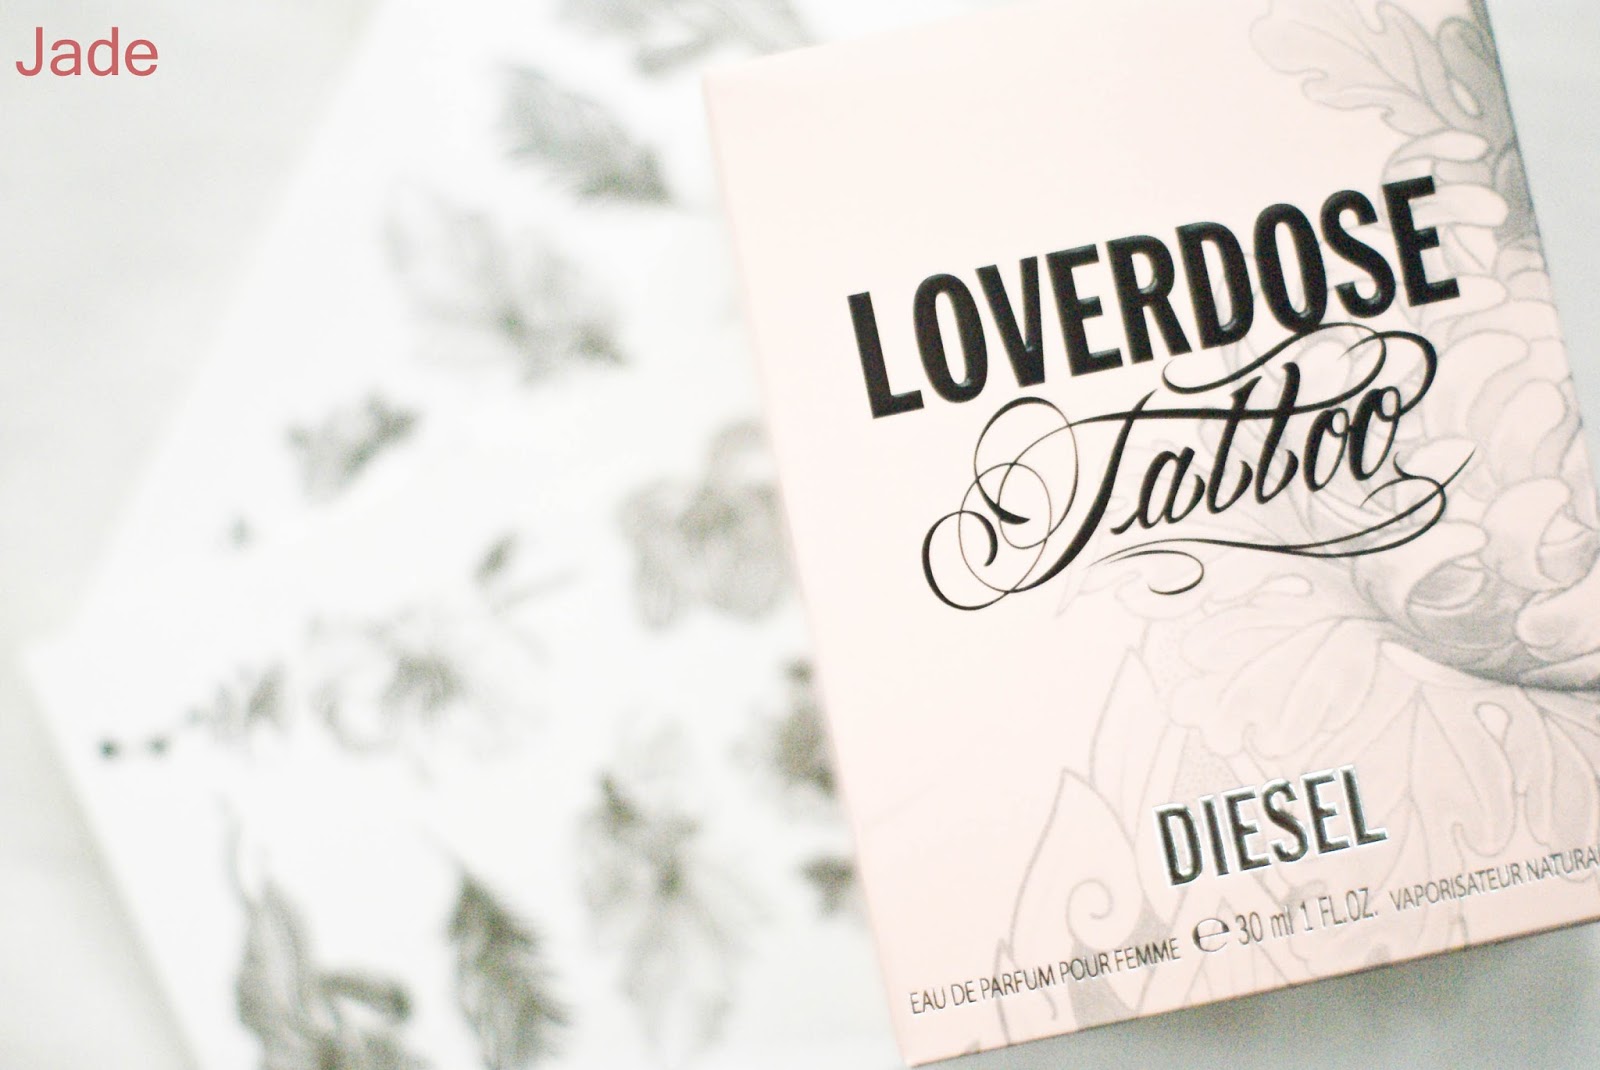 loverdose tattoo diesel